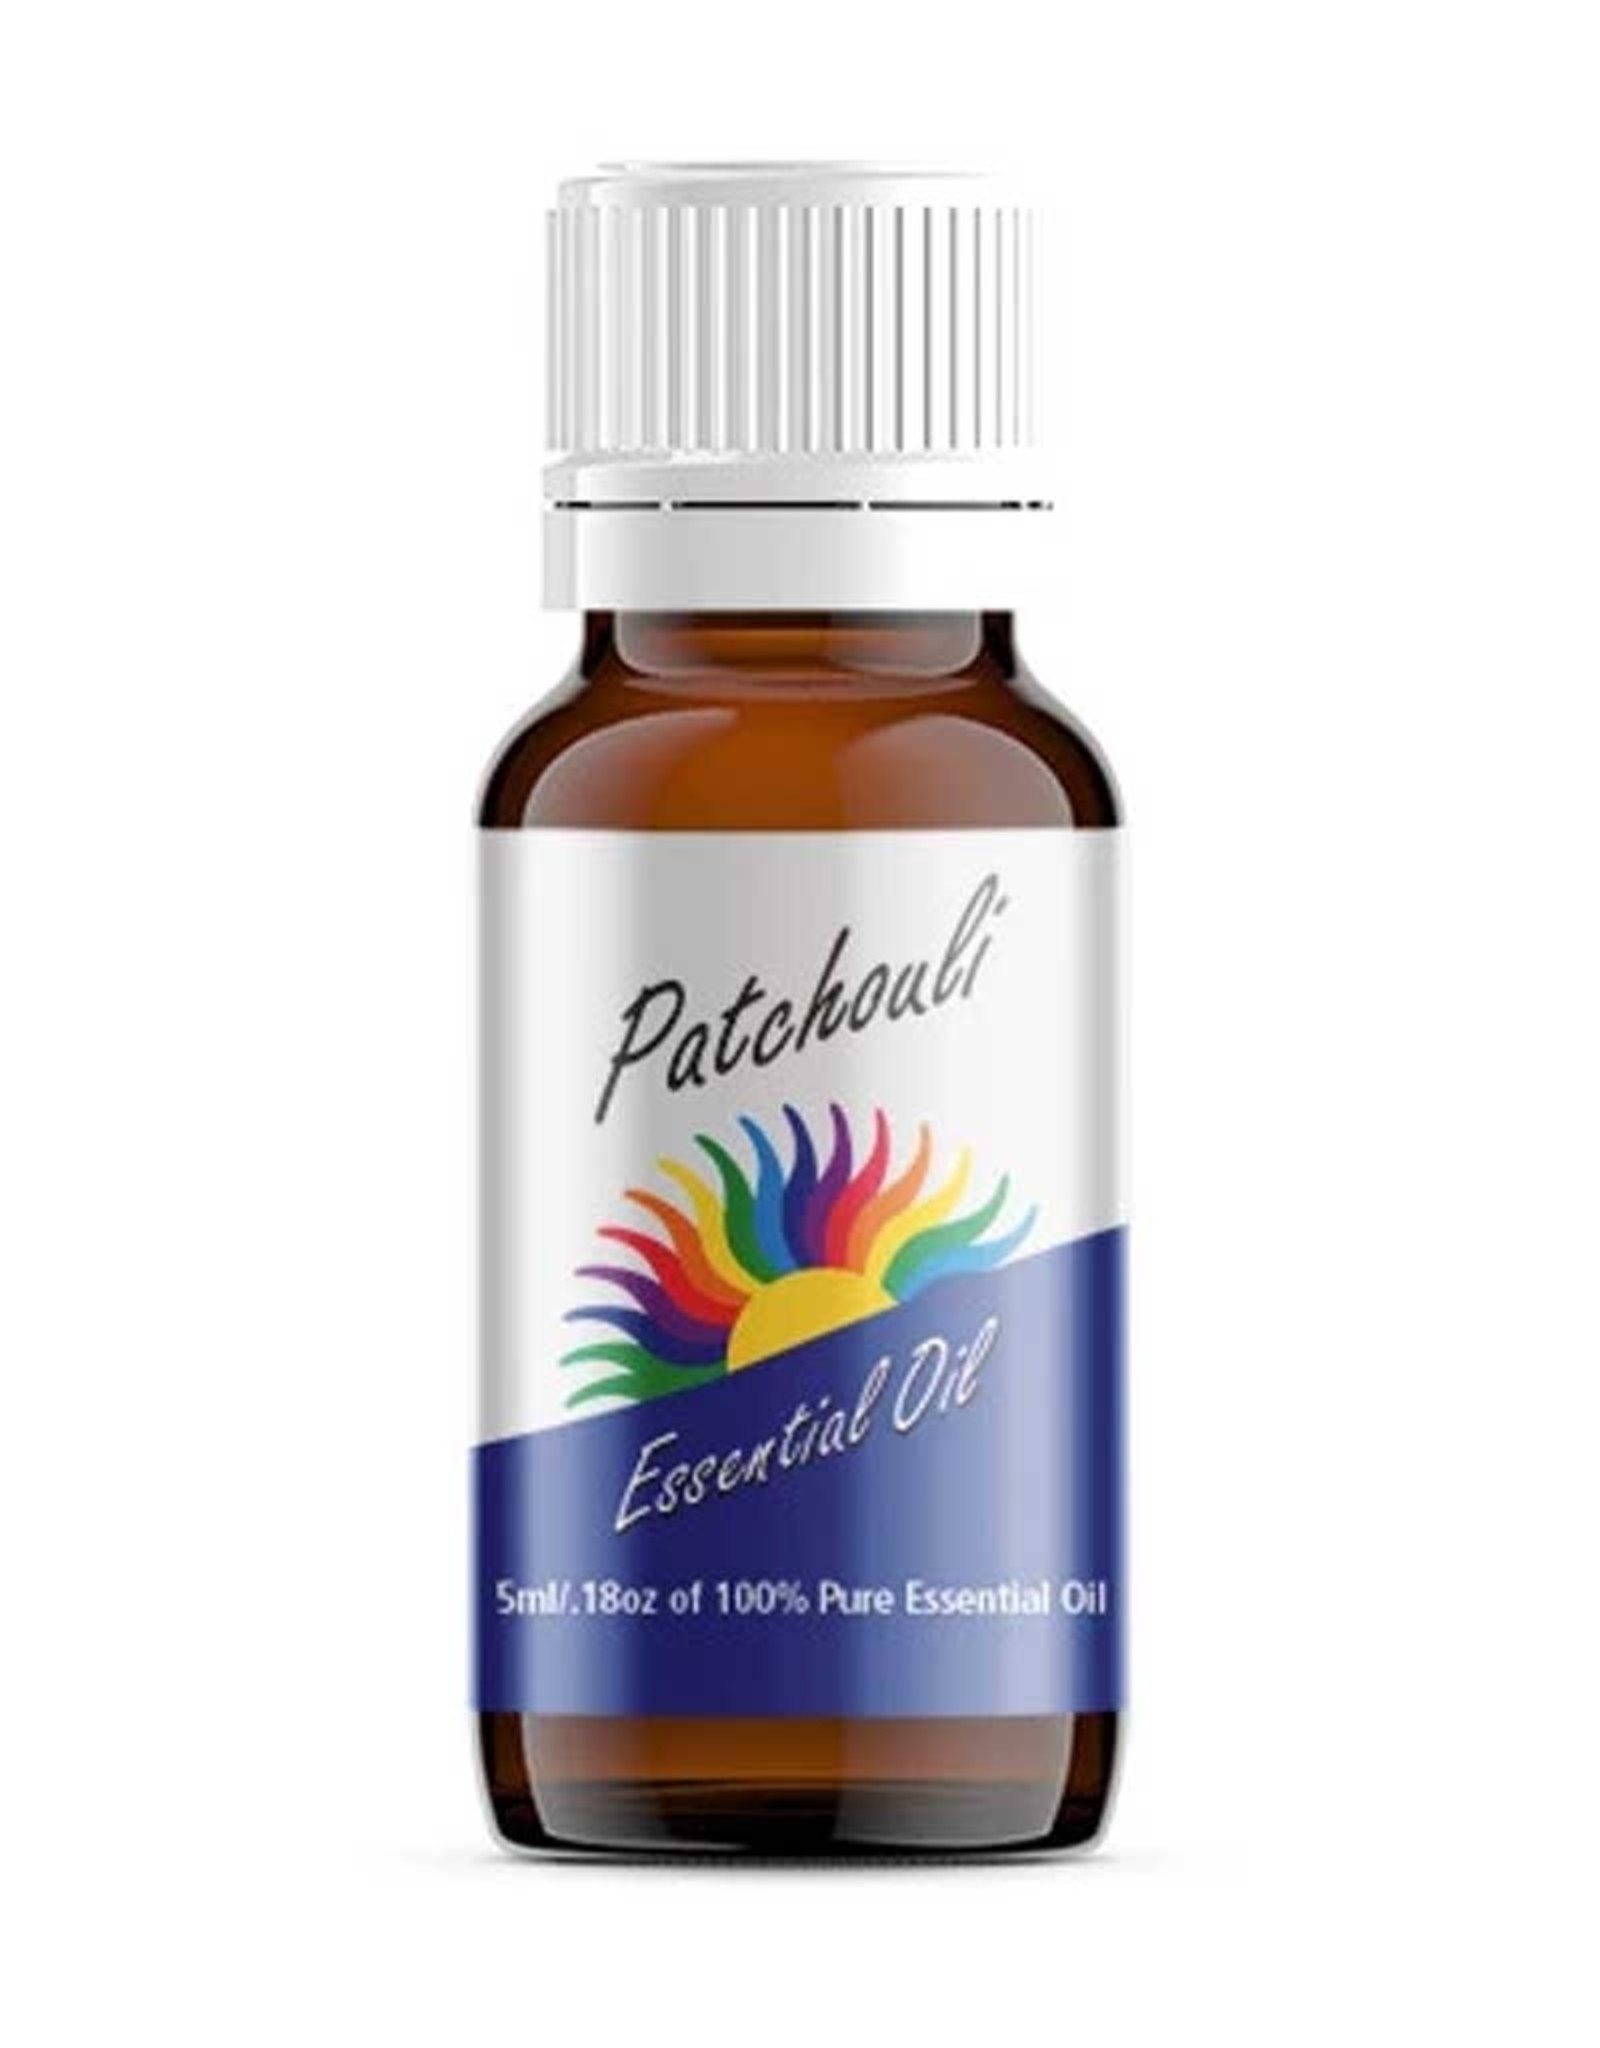 Colour Energy Patchouli Essential Oil 10ml